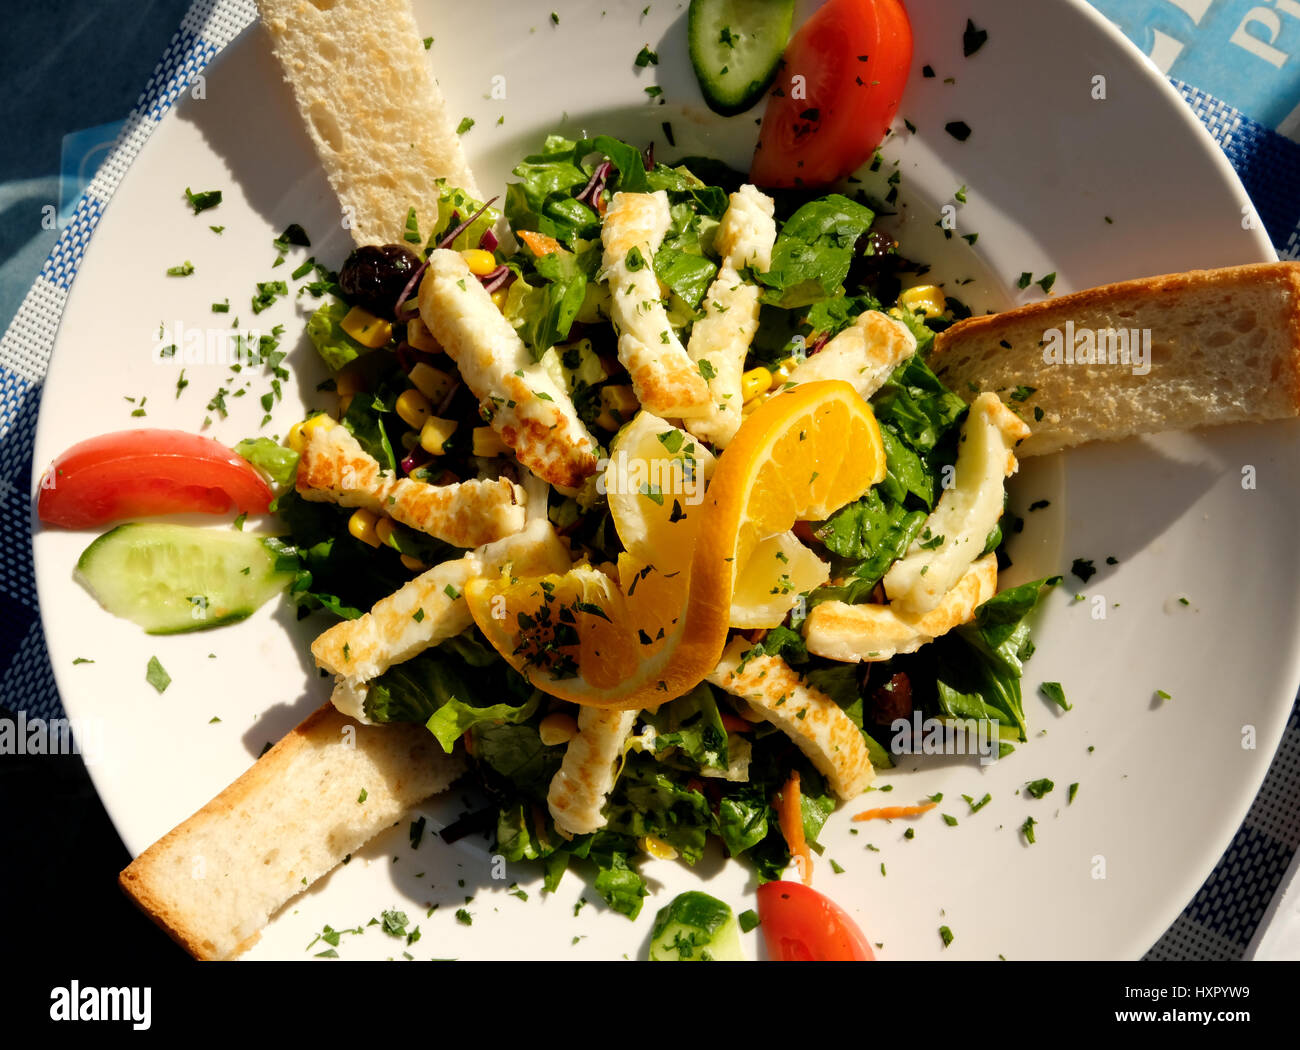 Halloumi insalata servita in un ristorante, nella zona turca di Nicosia, Cipro settentrionale. Foto Stock